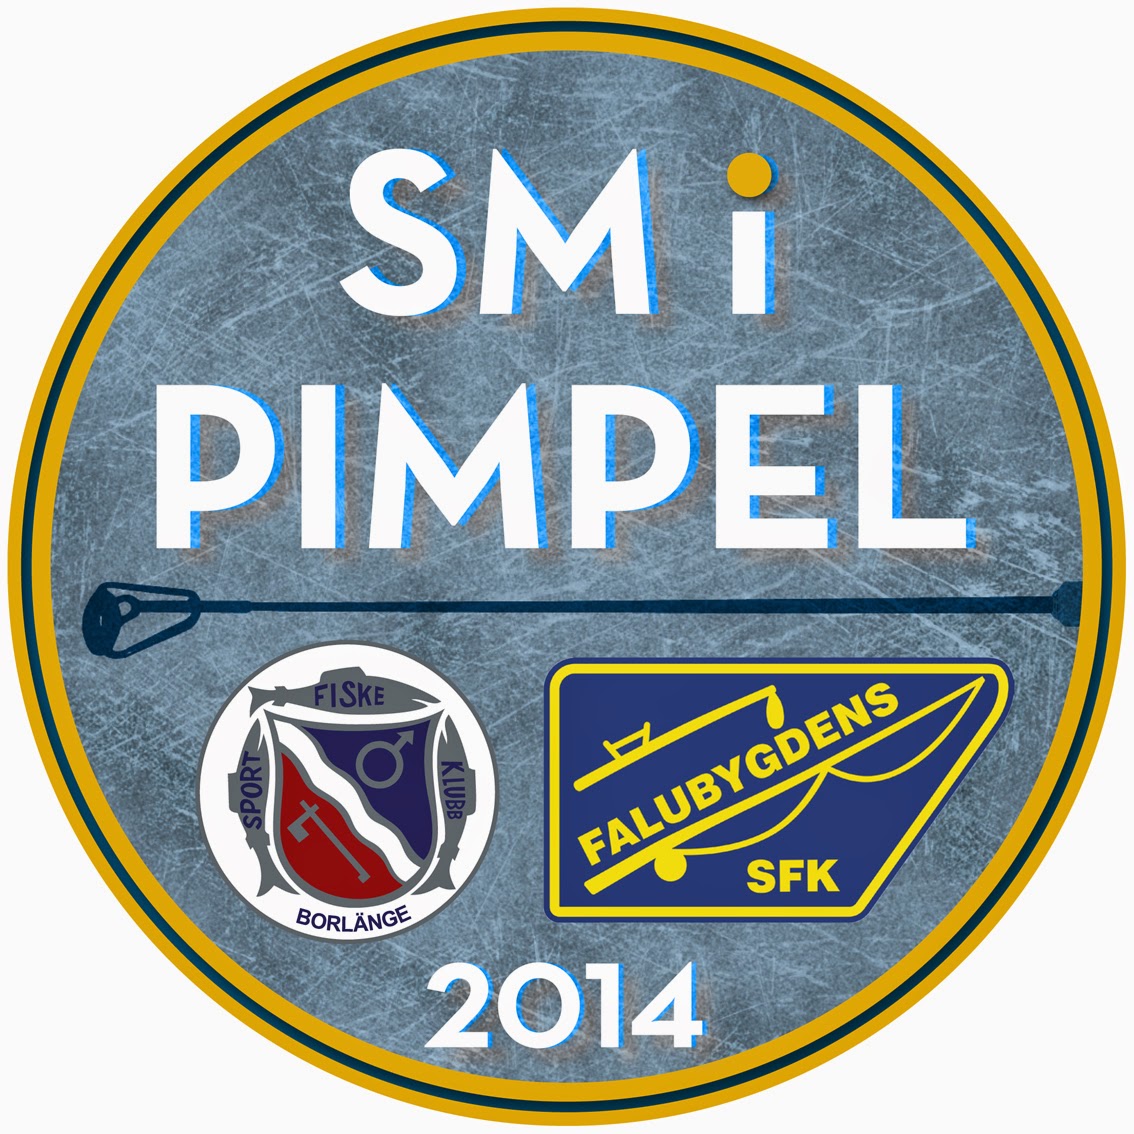 www.pimpelsm2014.se